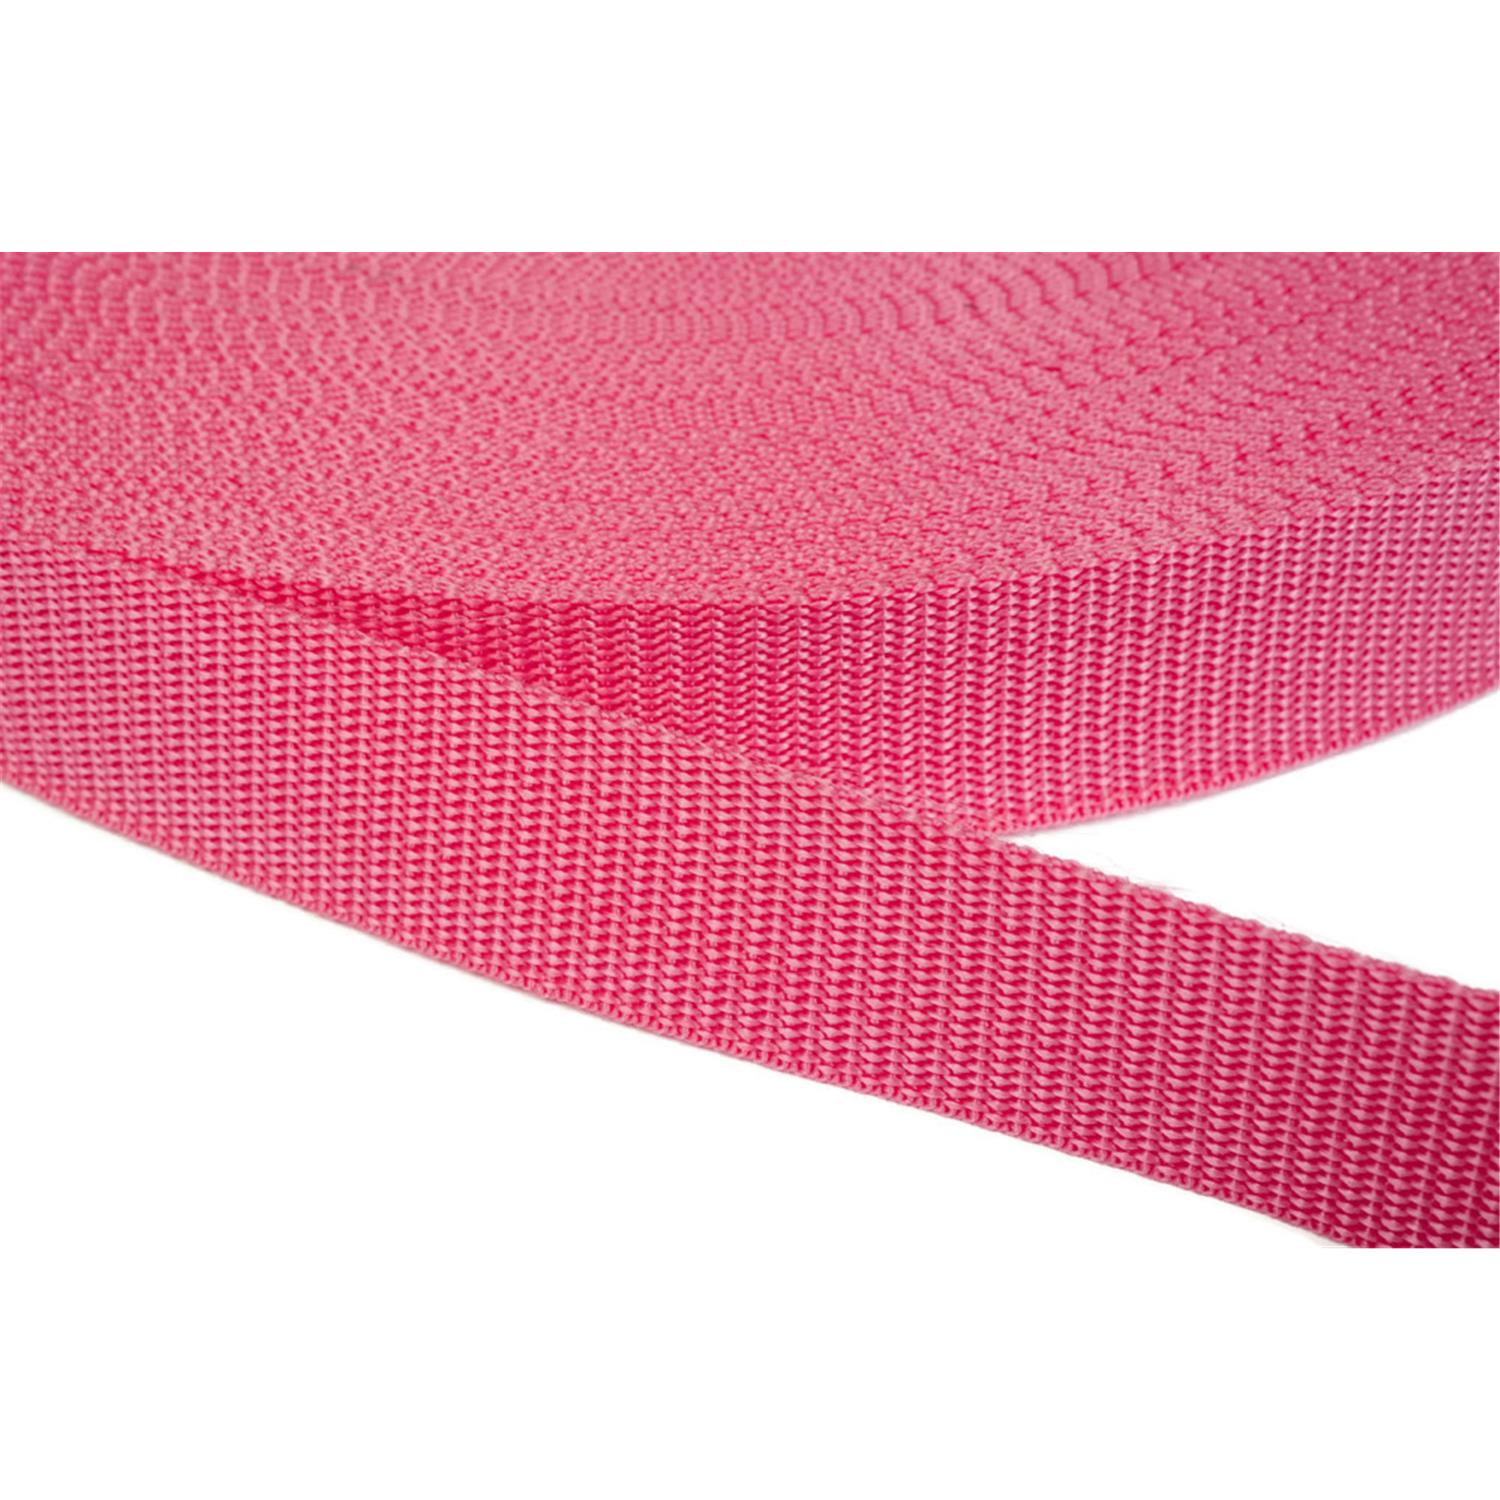 Gurtband 40mm breit aus Polypropylen in 41 Farben 13 - pink 50 Meter